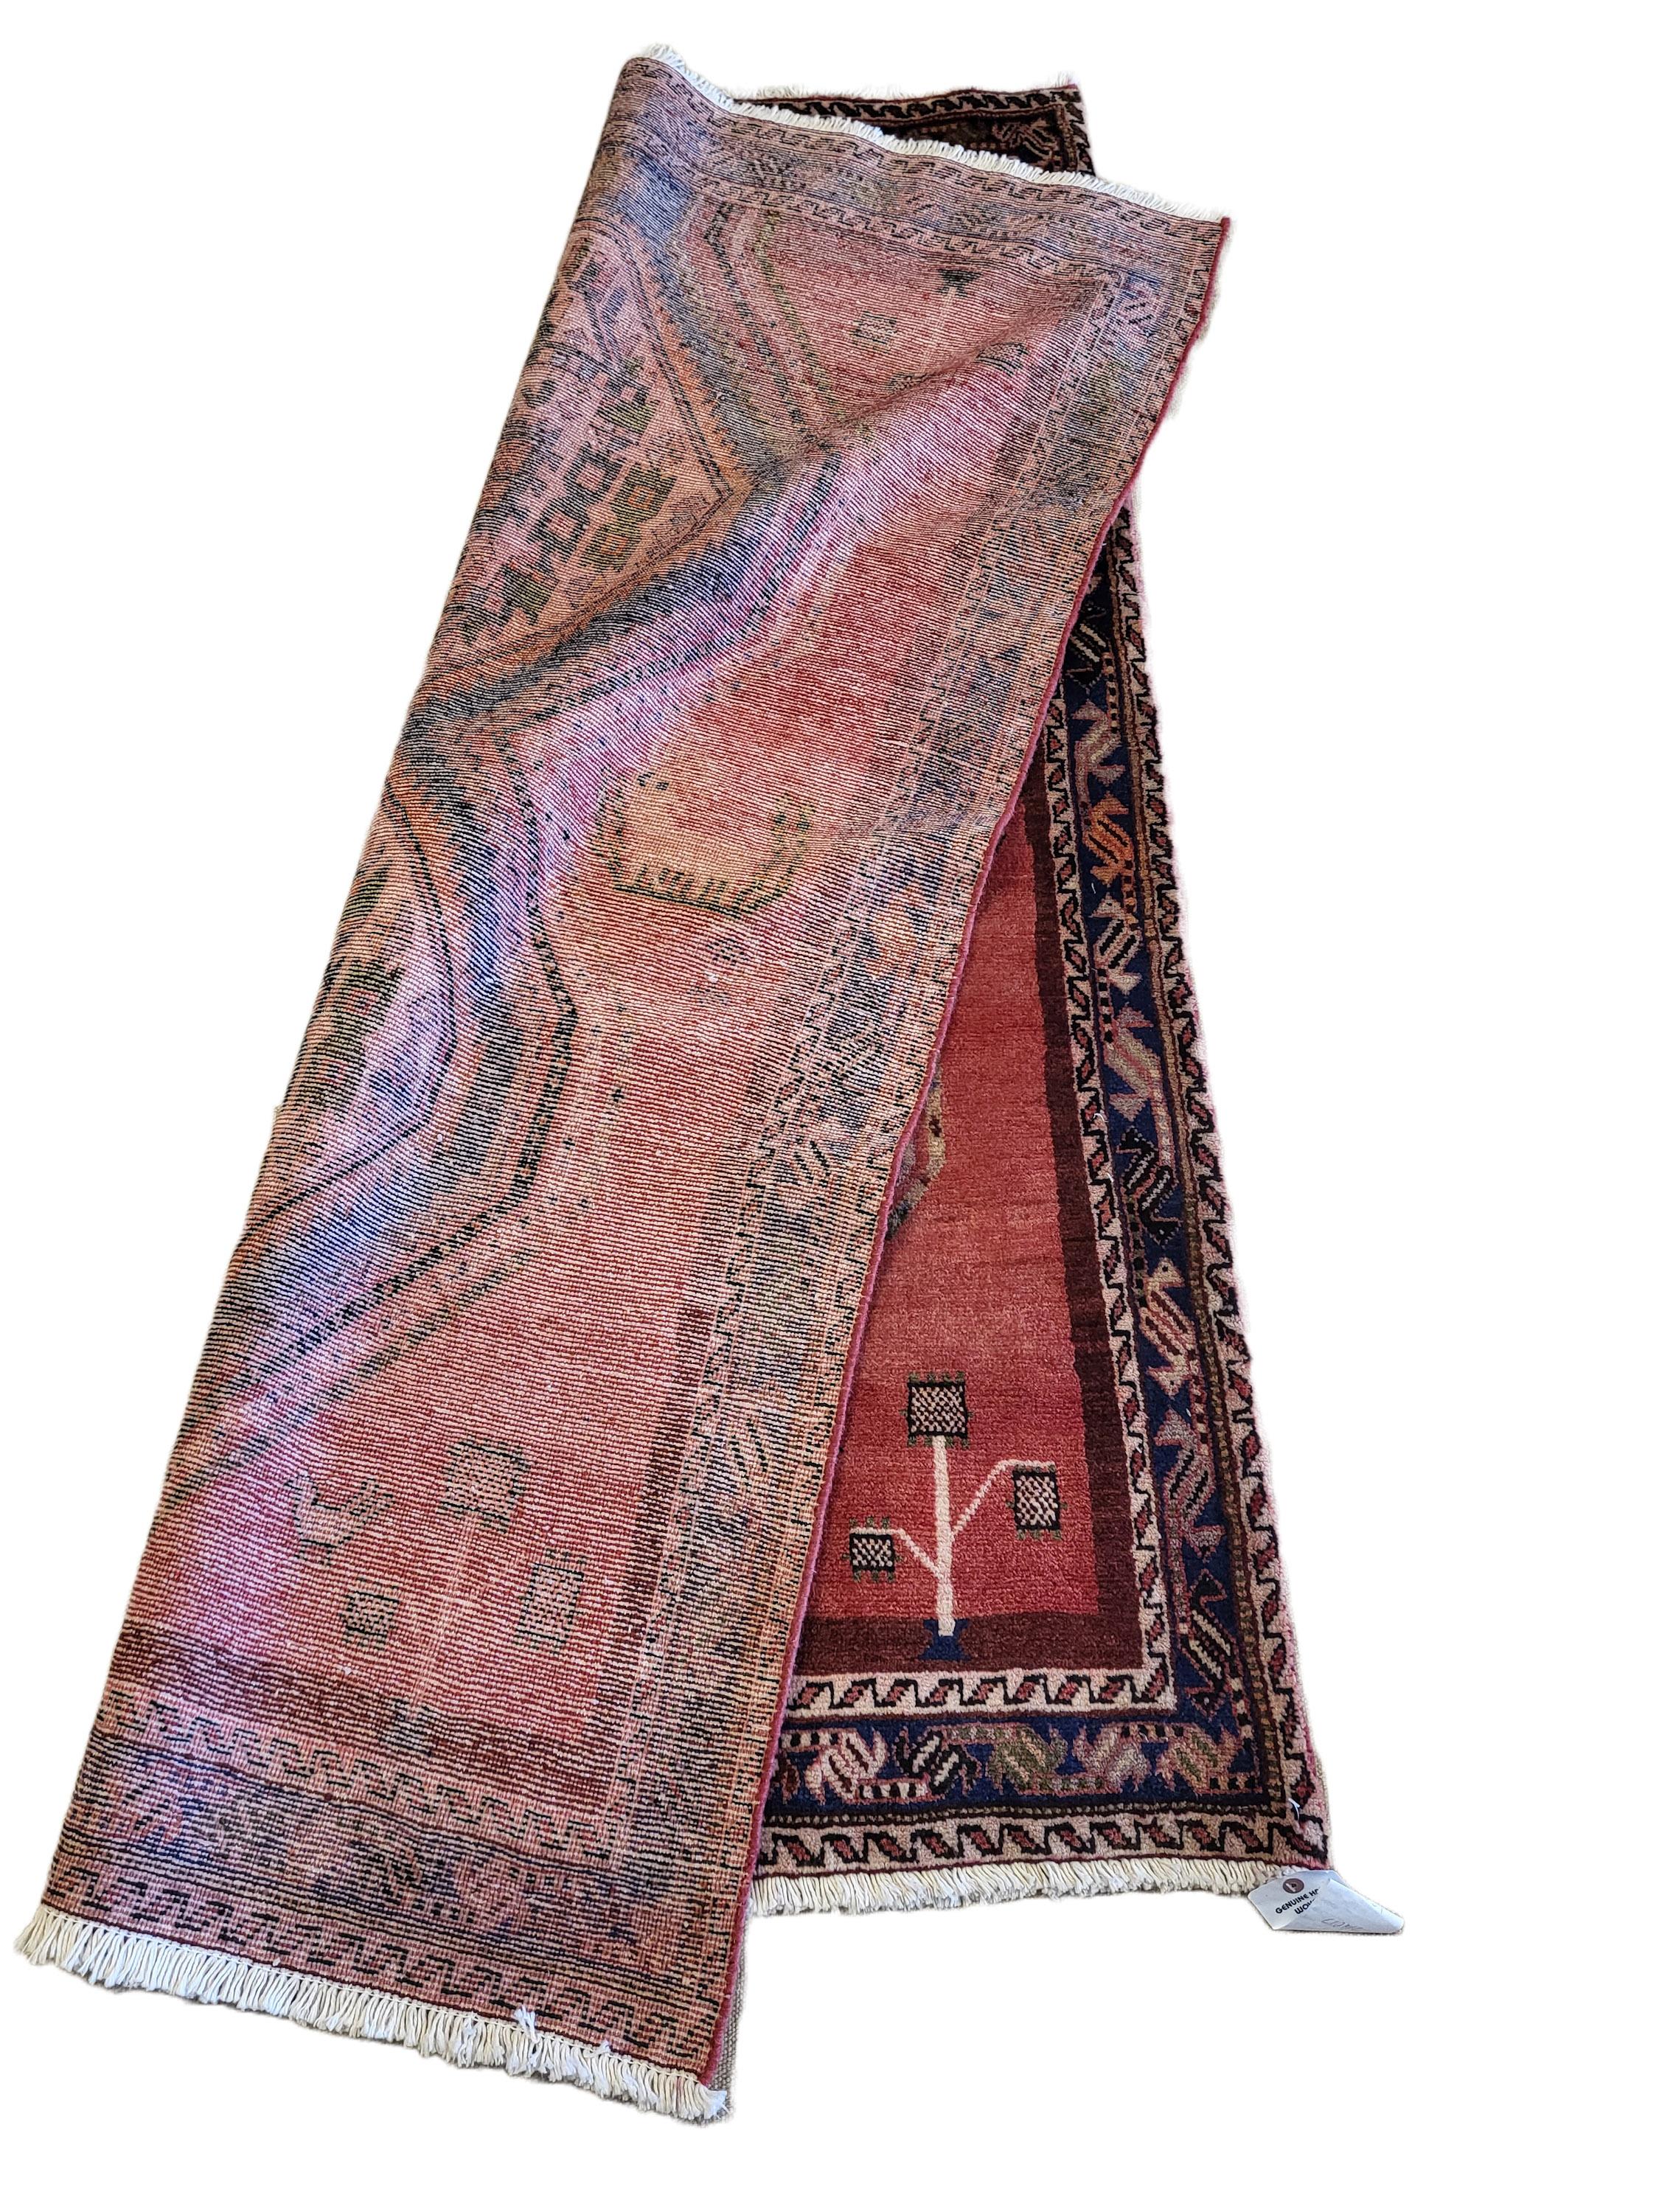 Makelloser, antiker persischer Sirjan/Afshar-Teppich.

Die weiche, plüschige persische Wolle wurde von den Stammesangehörigen von Sirjan in den 1940er Jahren meisterhaft von Hand gewebt.

Sorgfältig ausgewählte Farben, gepaart mit dem